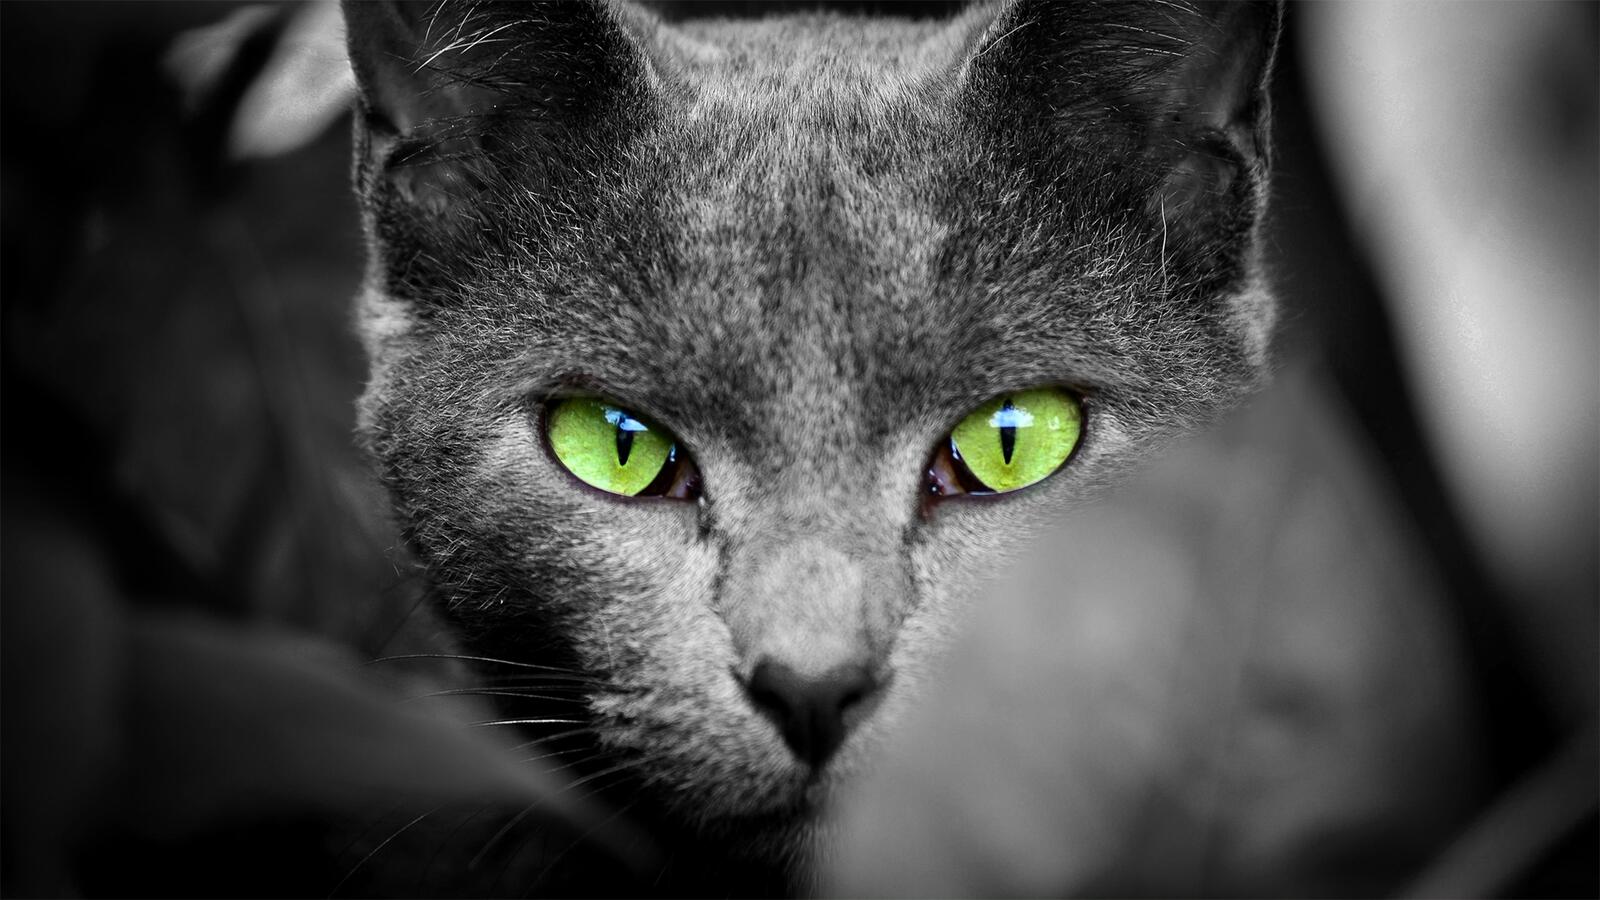 Бесплатное фото Кот с зелеными глазами на монохромном фото